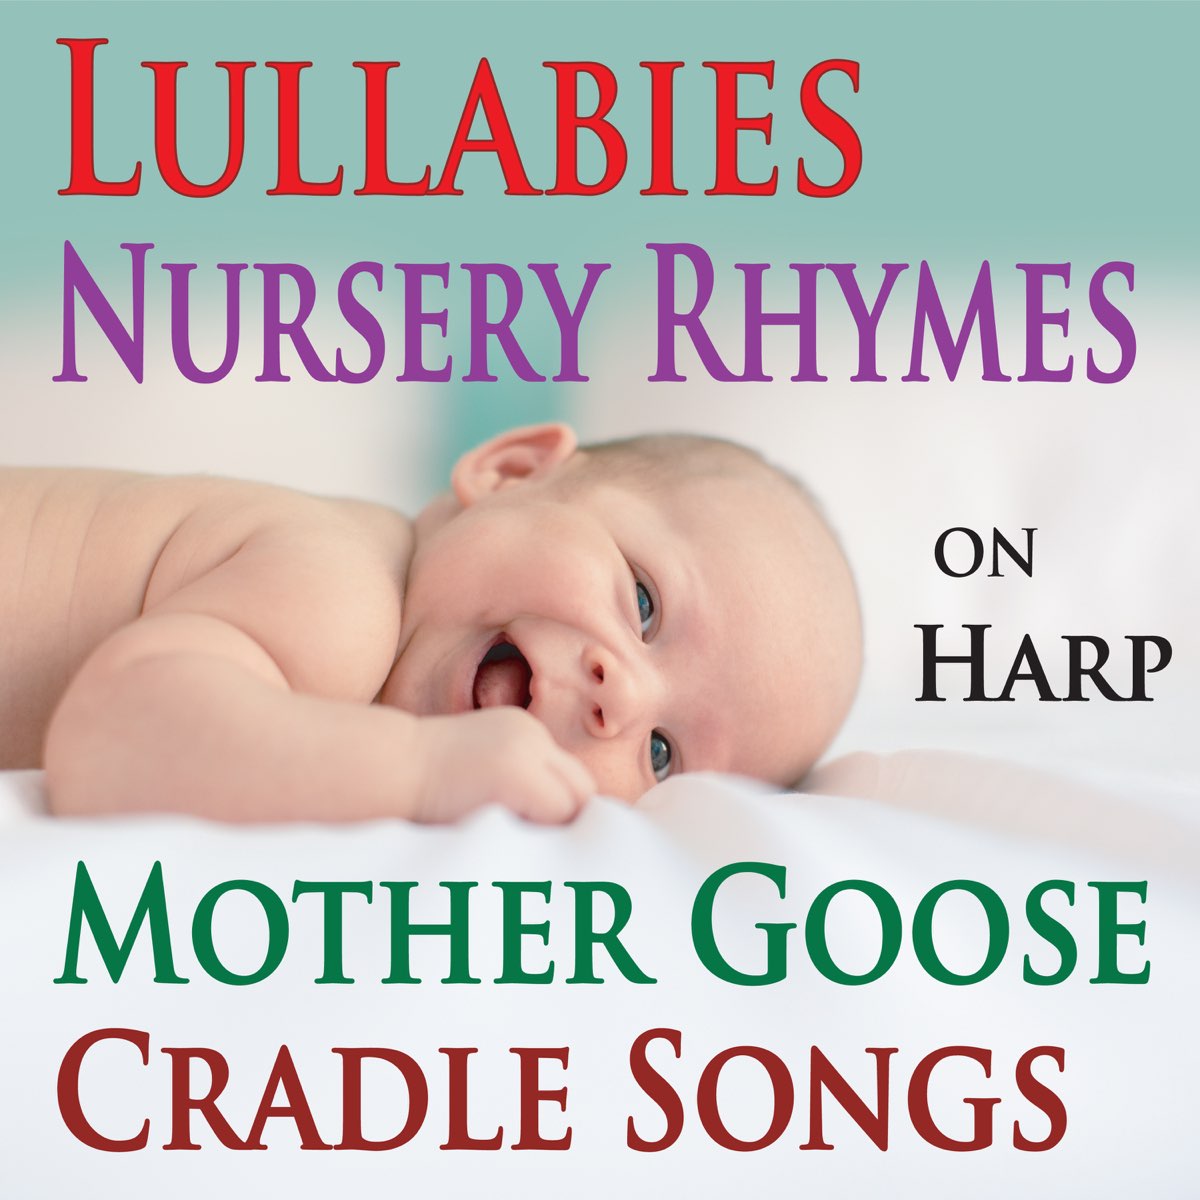 ‎Lullabies, Nursery Rhymes, Mother Goose Cradle Songs on Harp by The ...